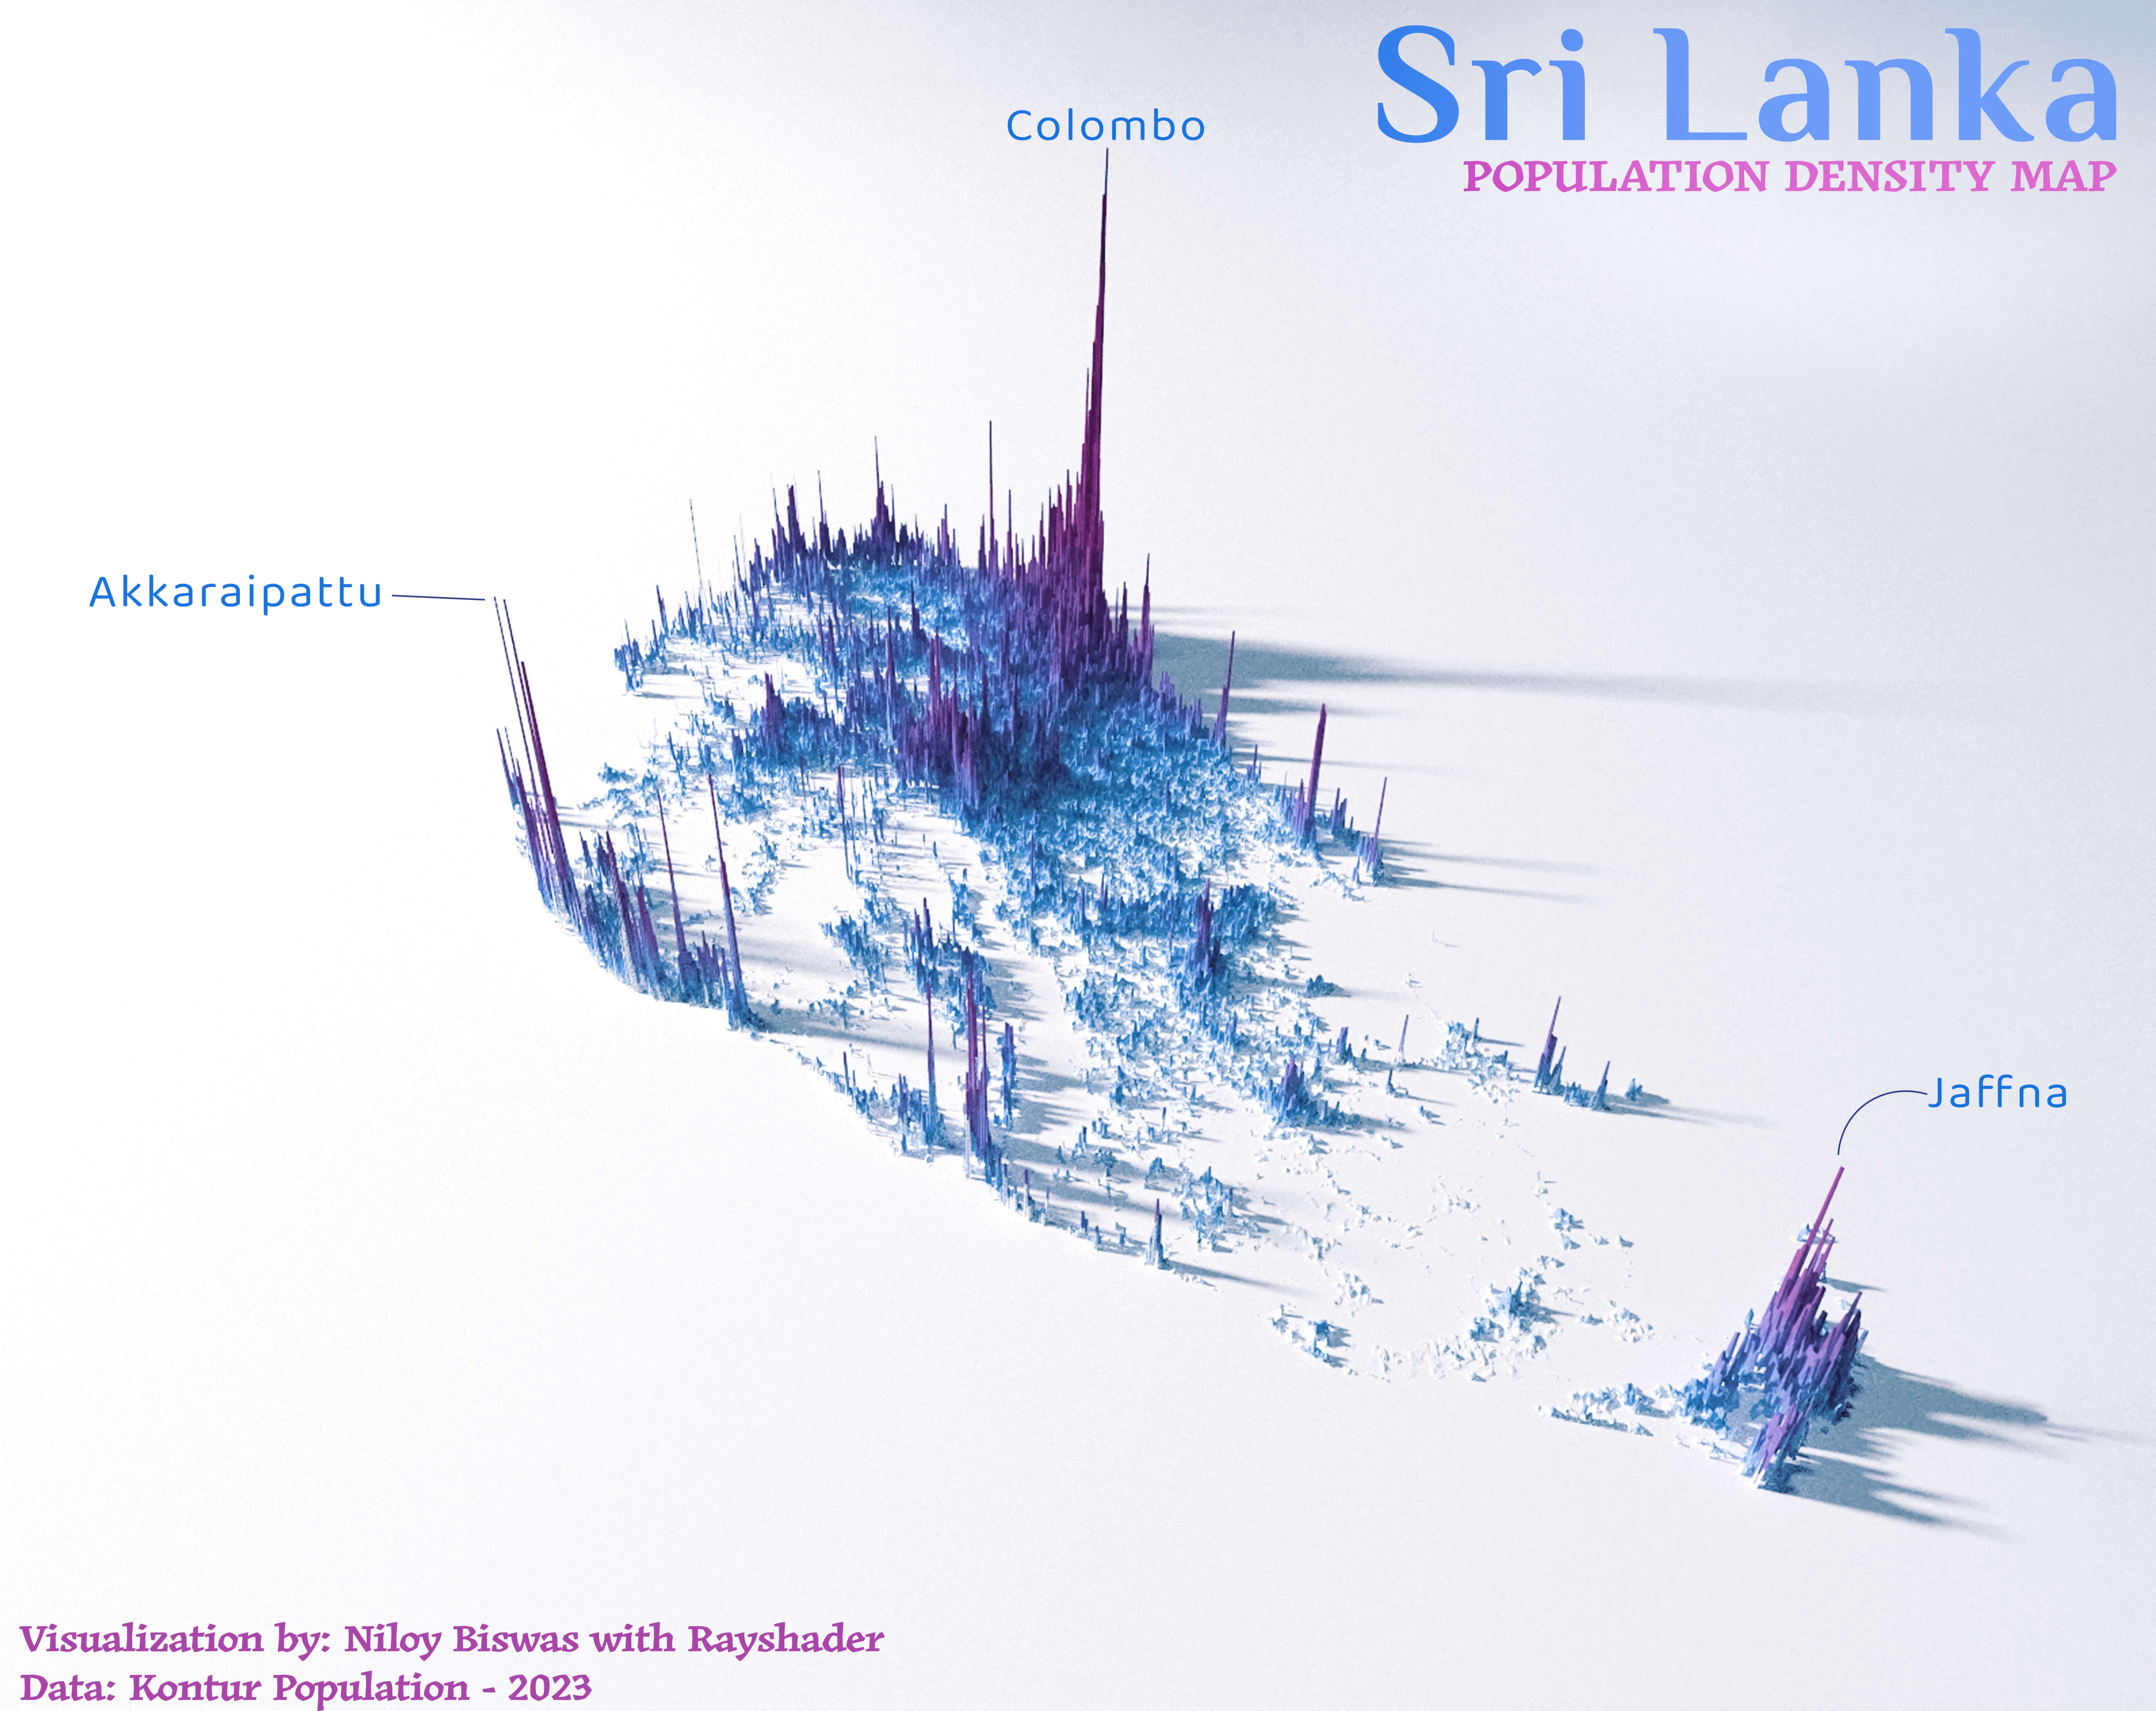 Sri Lanka population density map